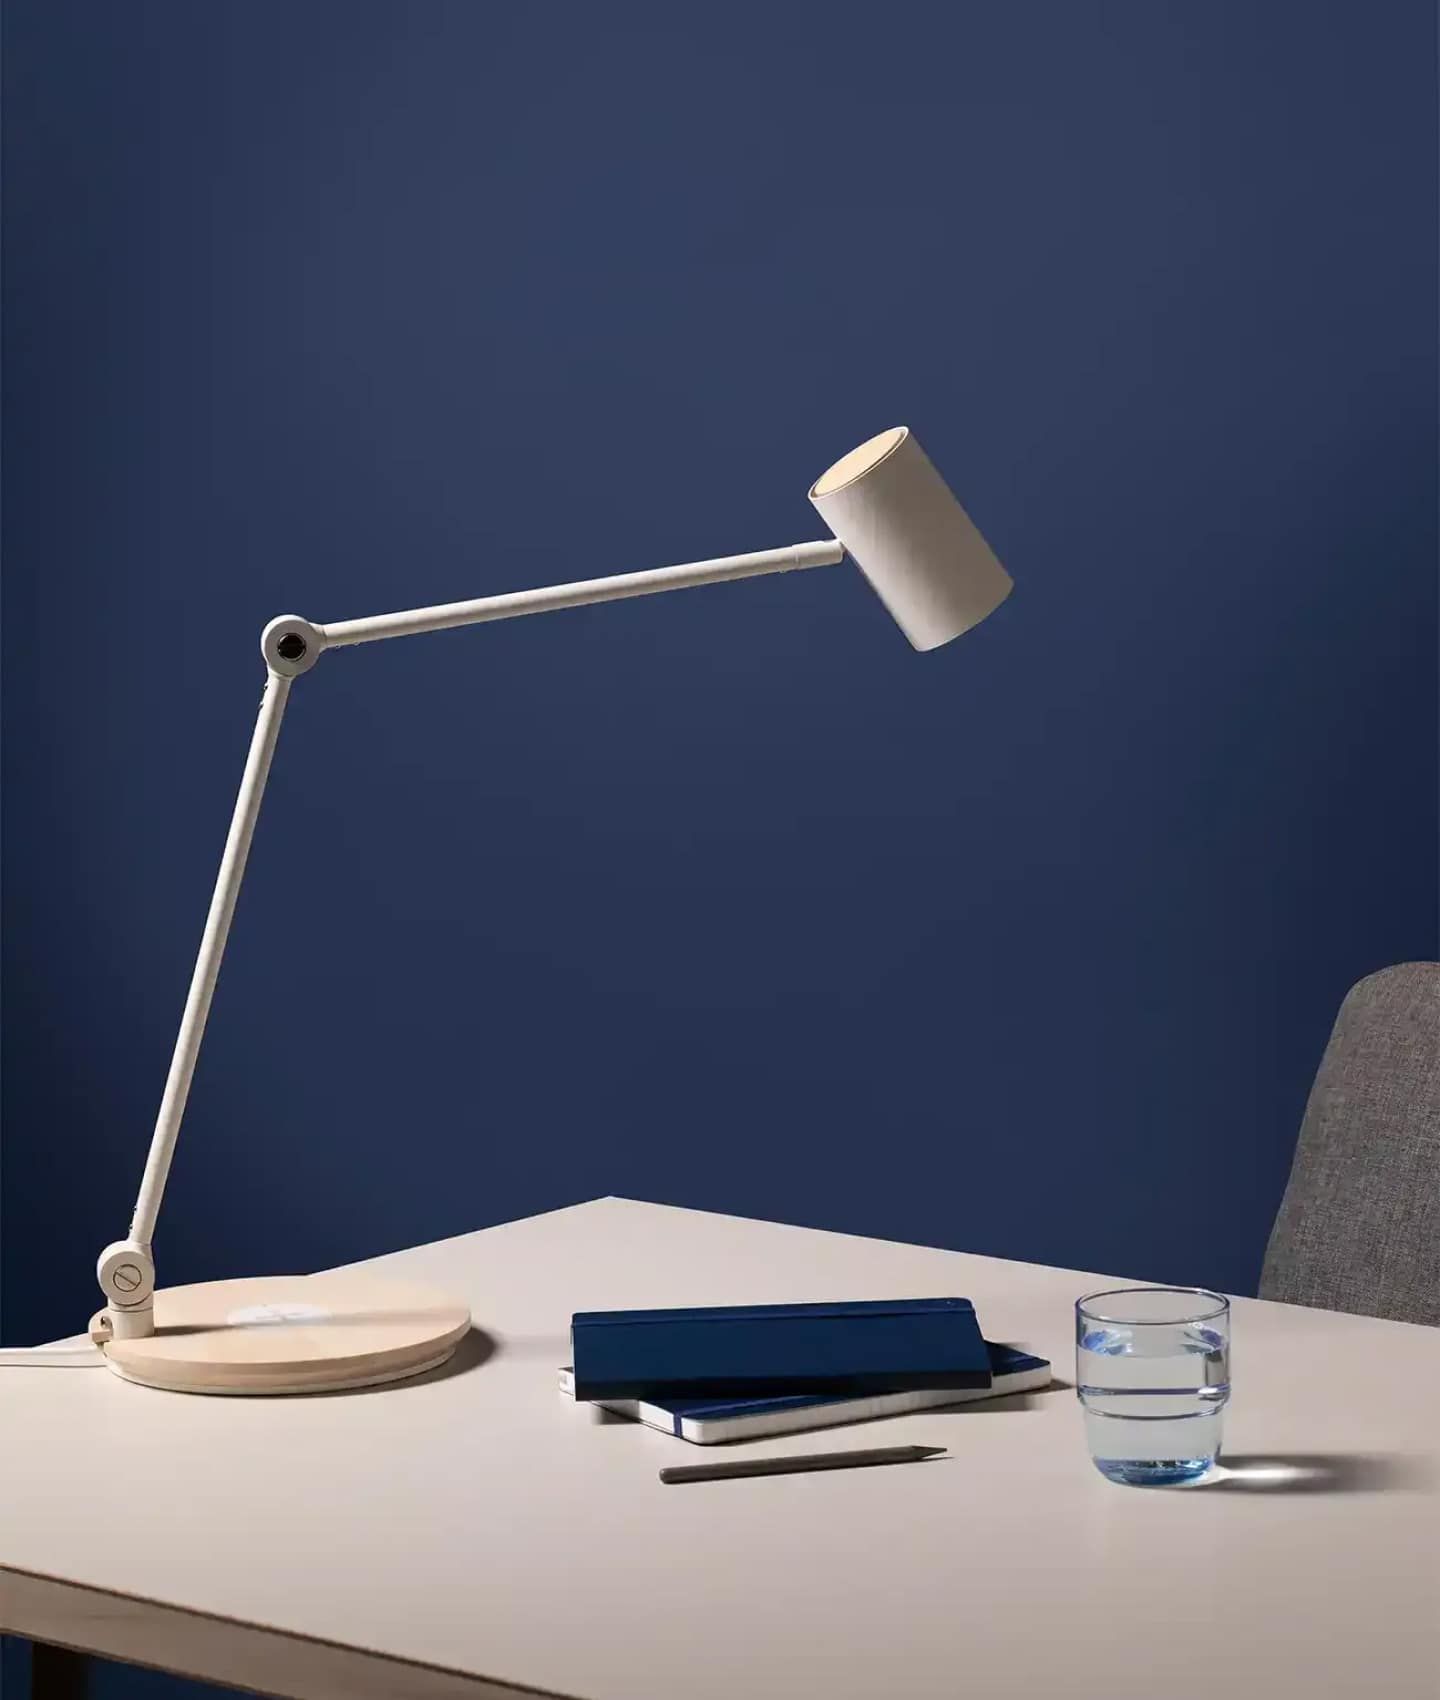 Lamp on desk